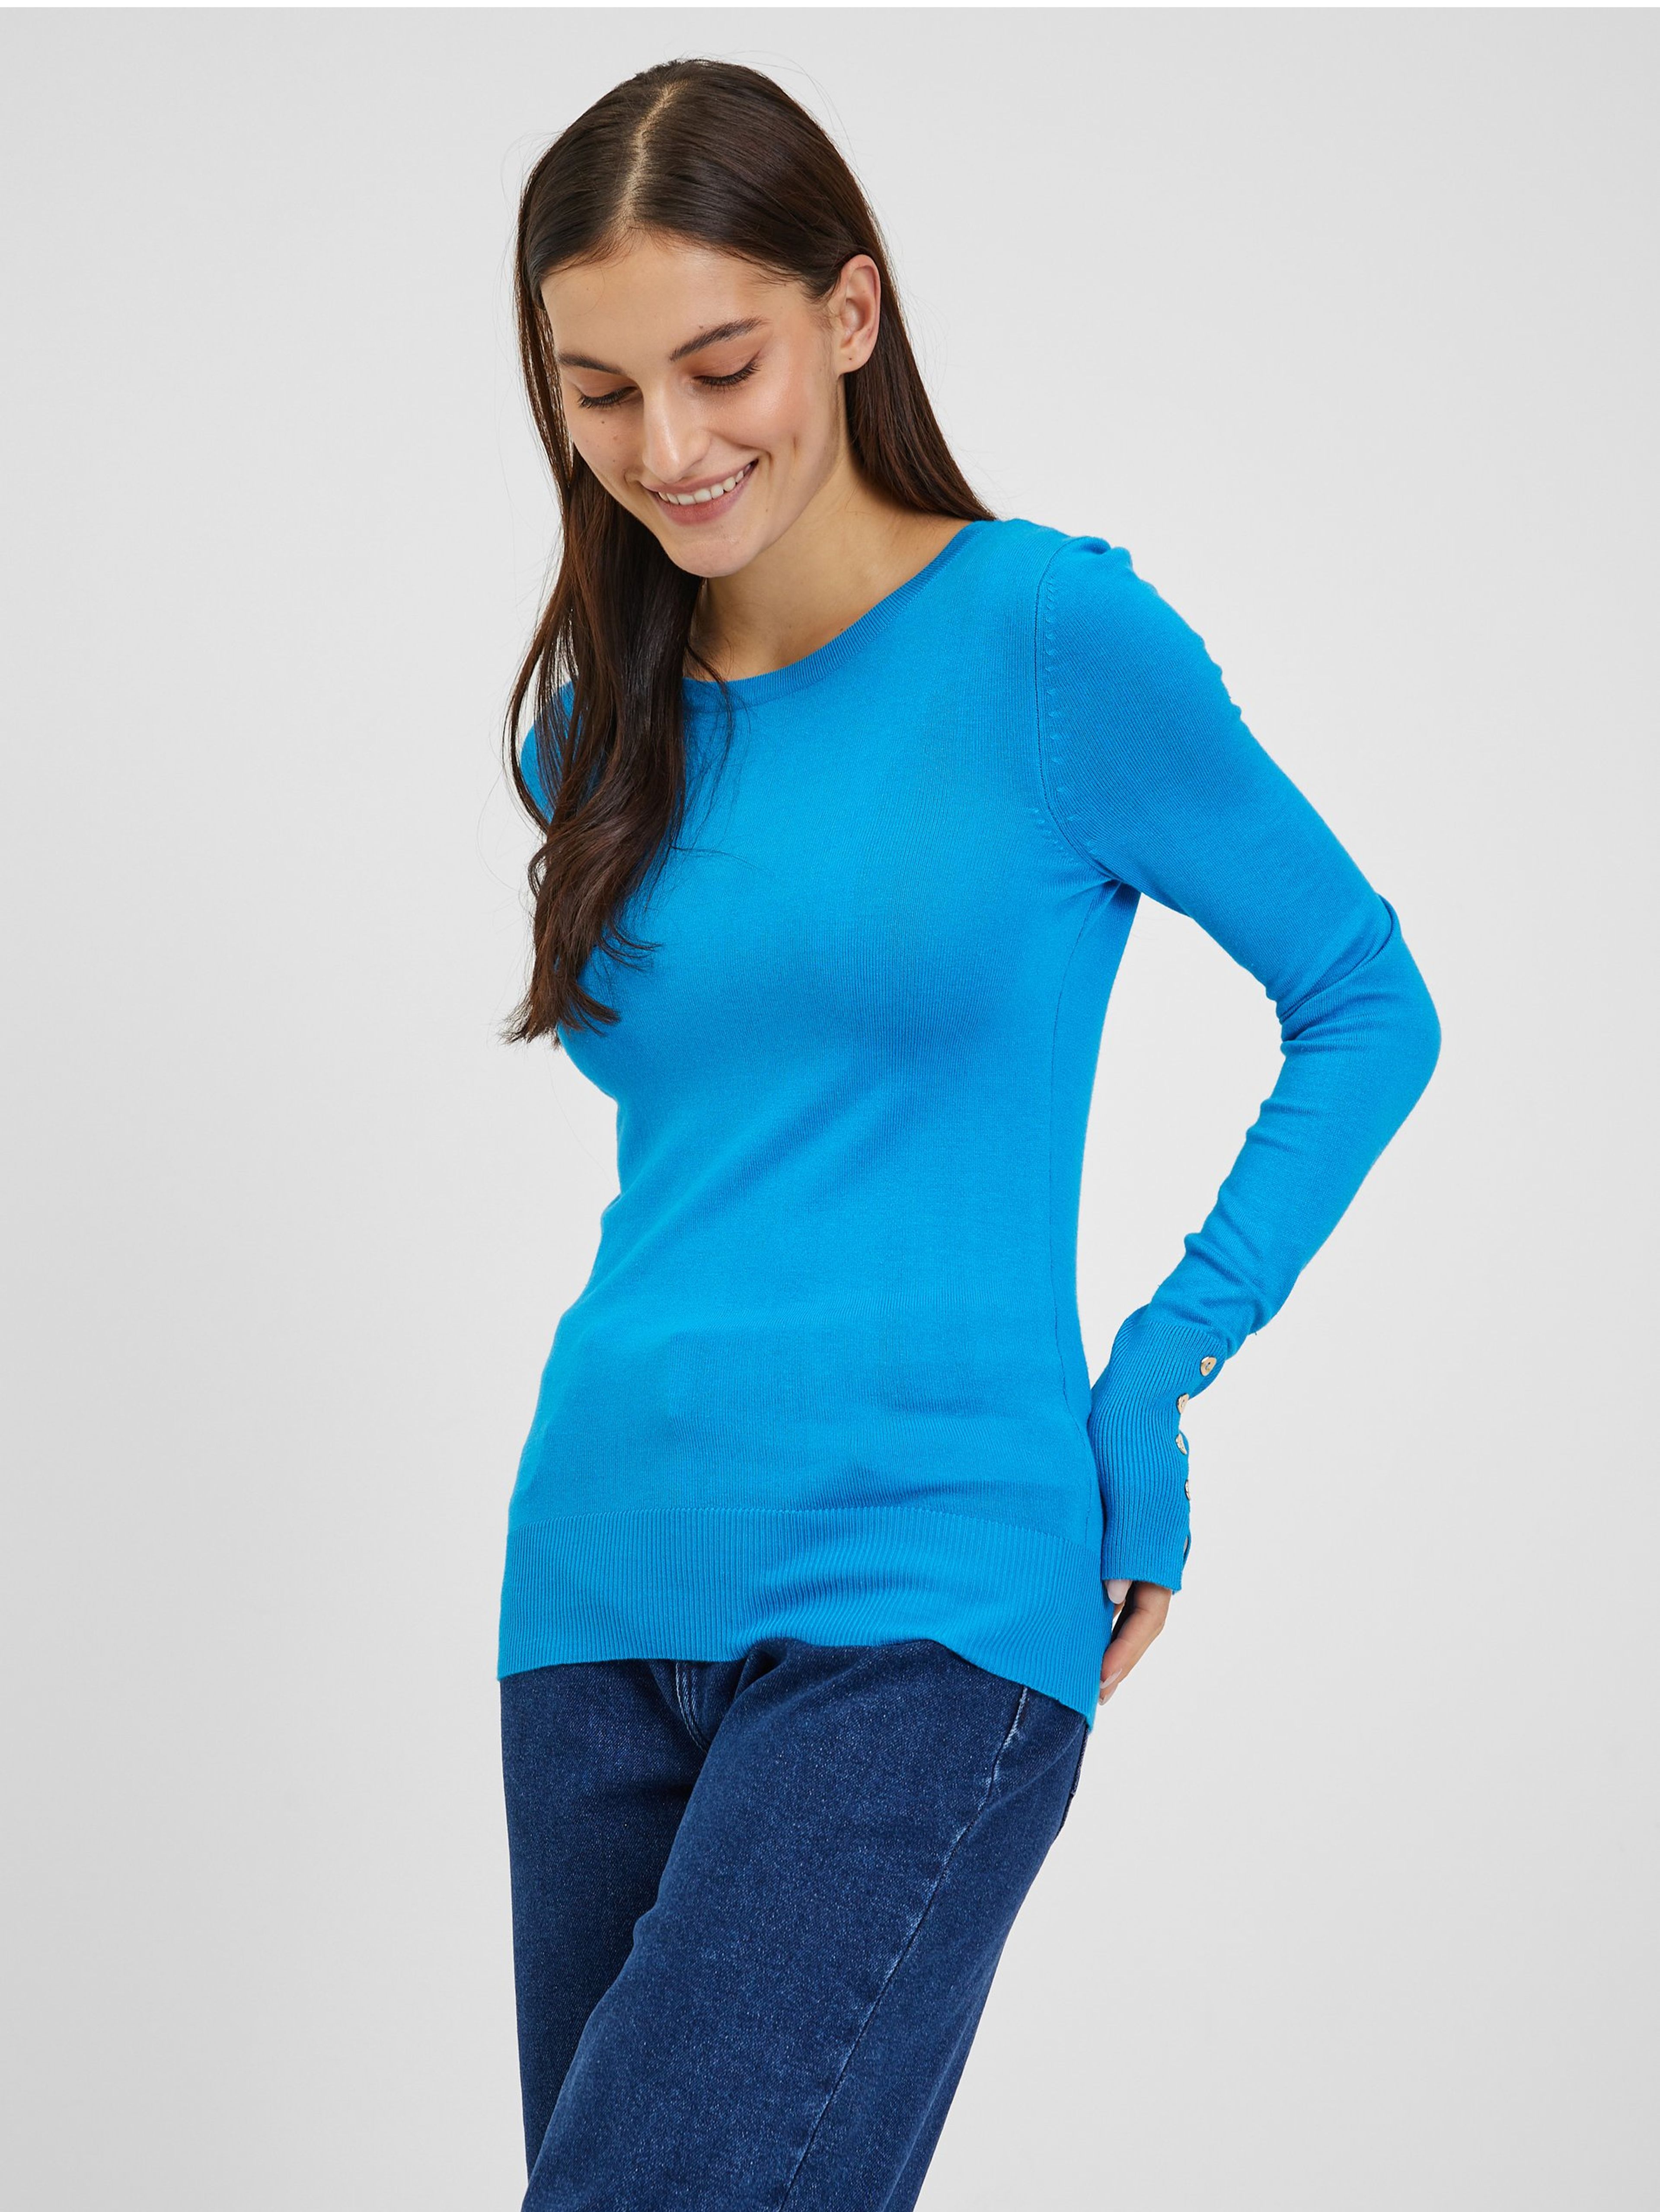 Blauer leichter Damen-Pullover ORSAY